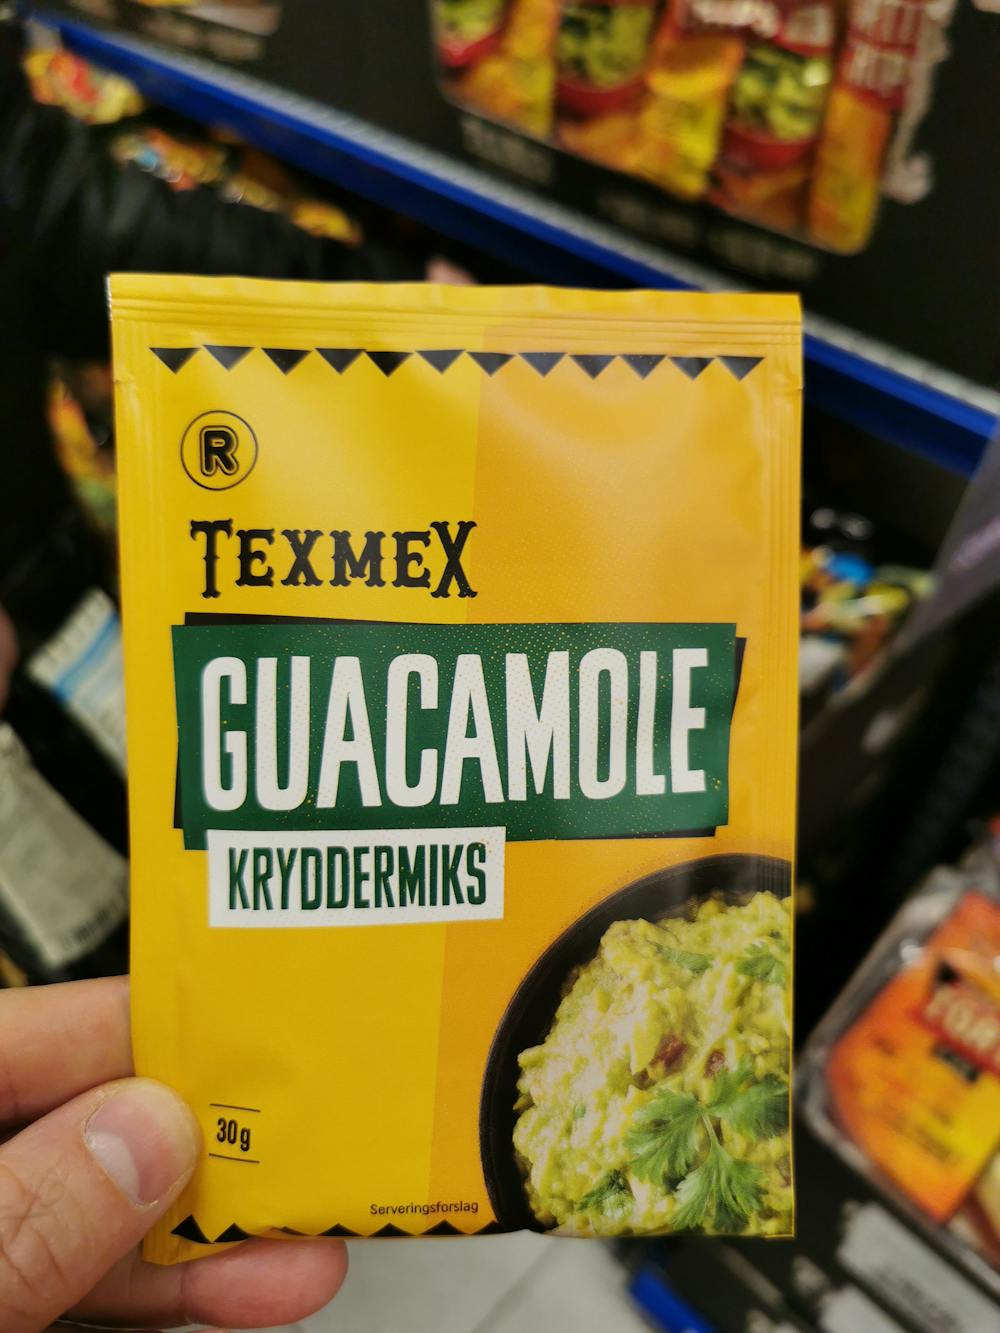 Texmex guacamole kryddermiks, Rema 1000